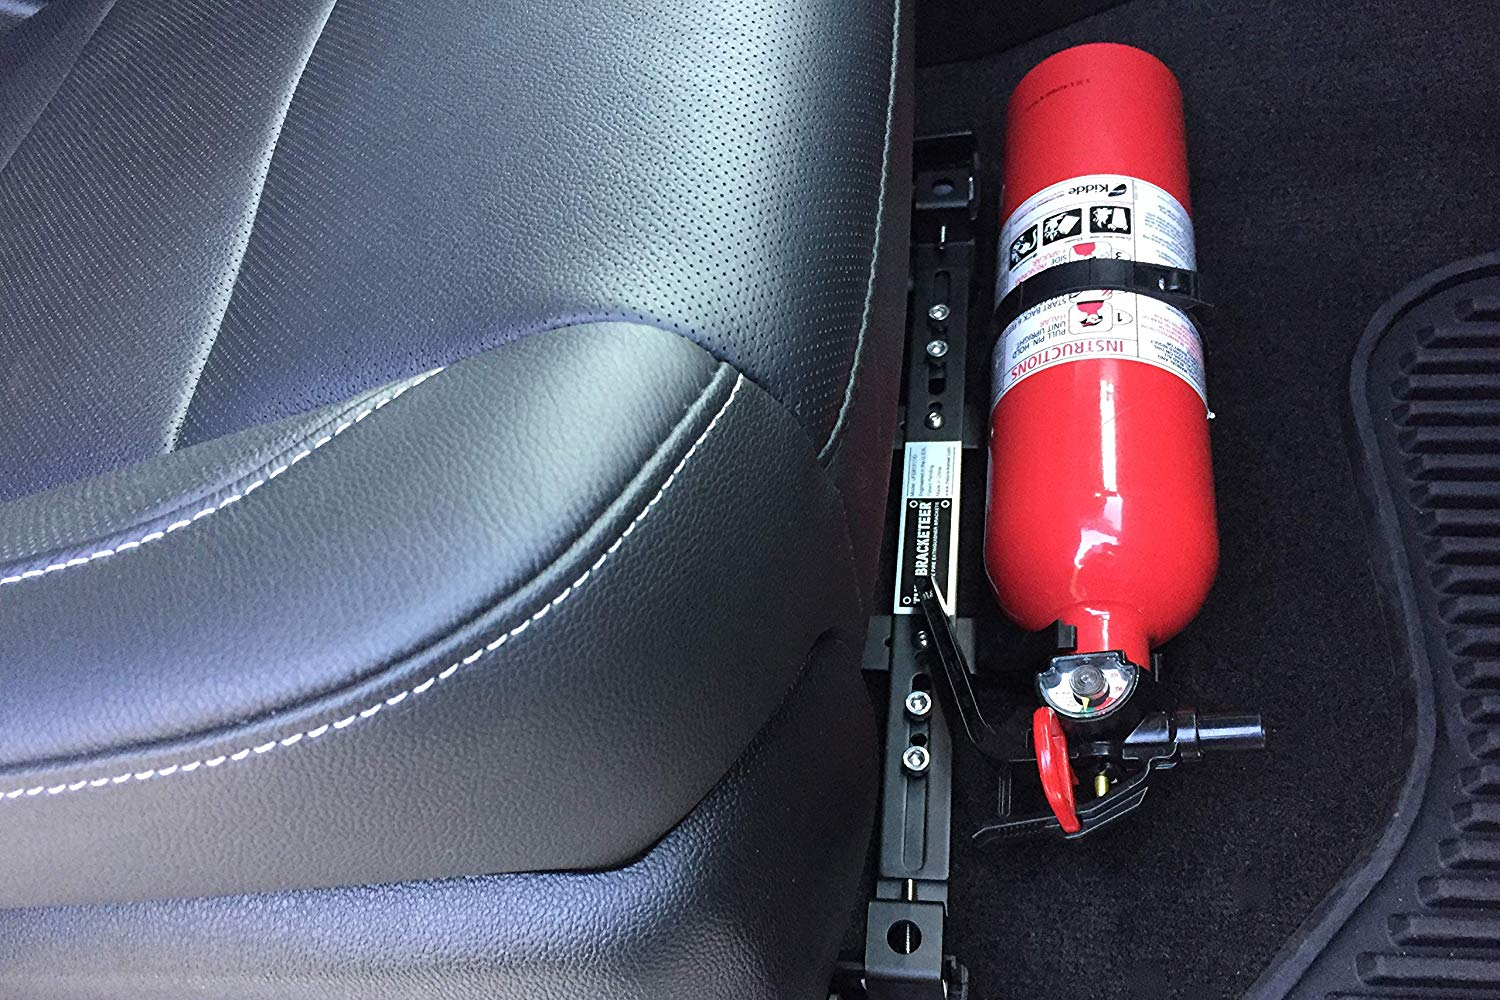 Vị trí đặt bình chữa cháy trên ô tô nên dễ tìm và dễ thấy